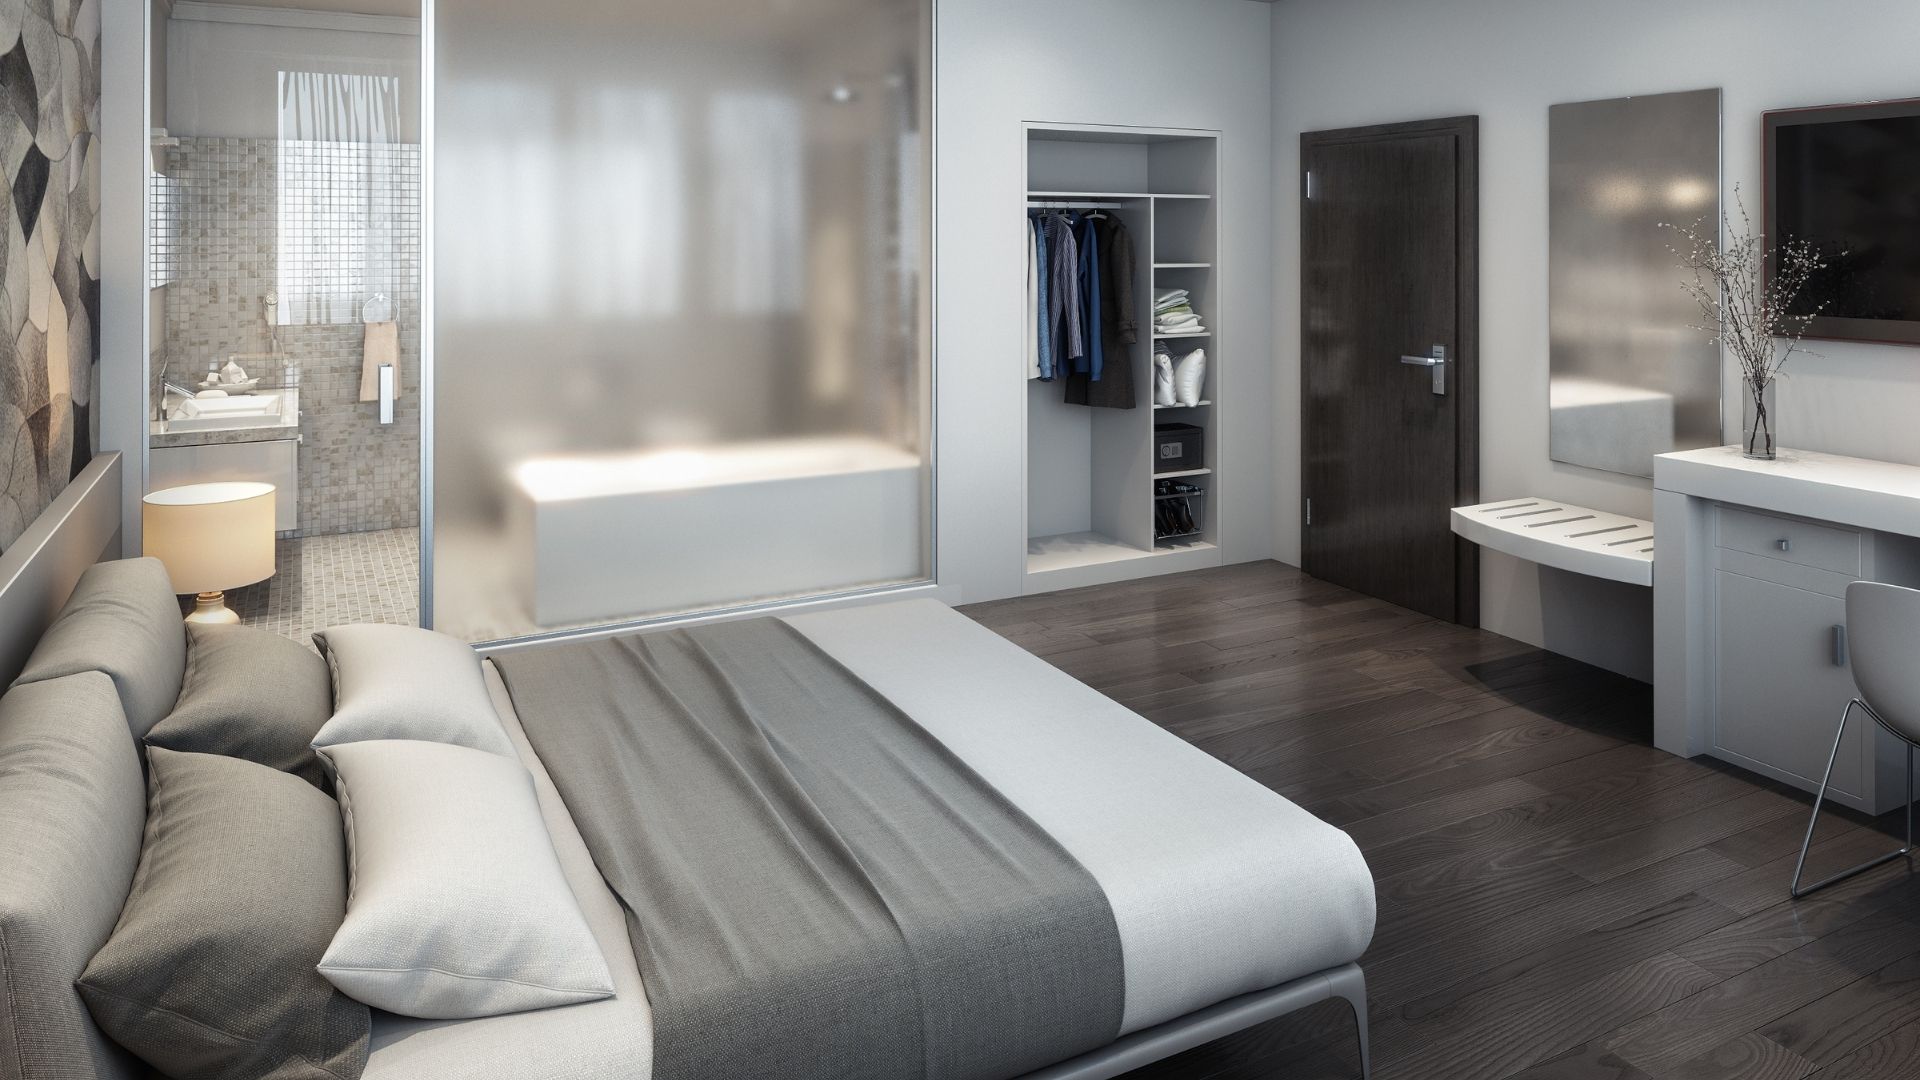 Camera da letto Hotel Igienizzata Sanificata Cleanter Abruzzo Teramo